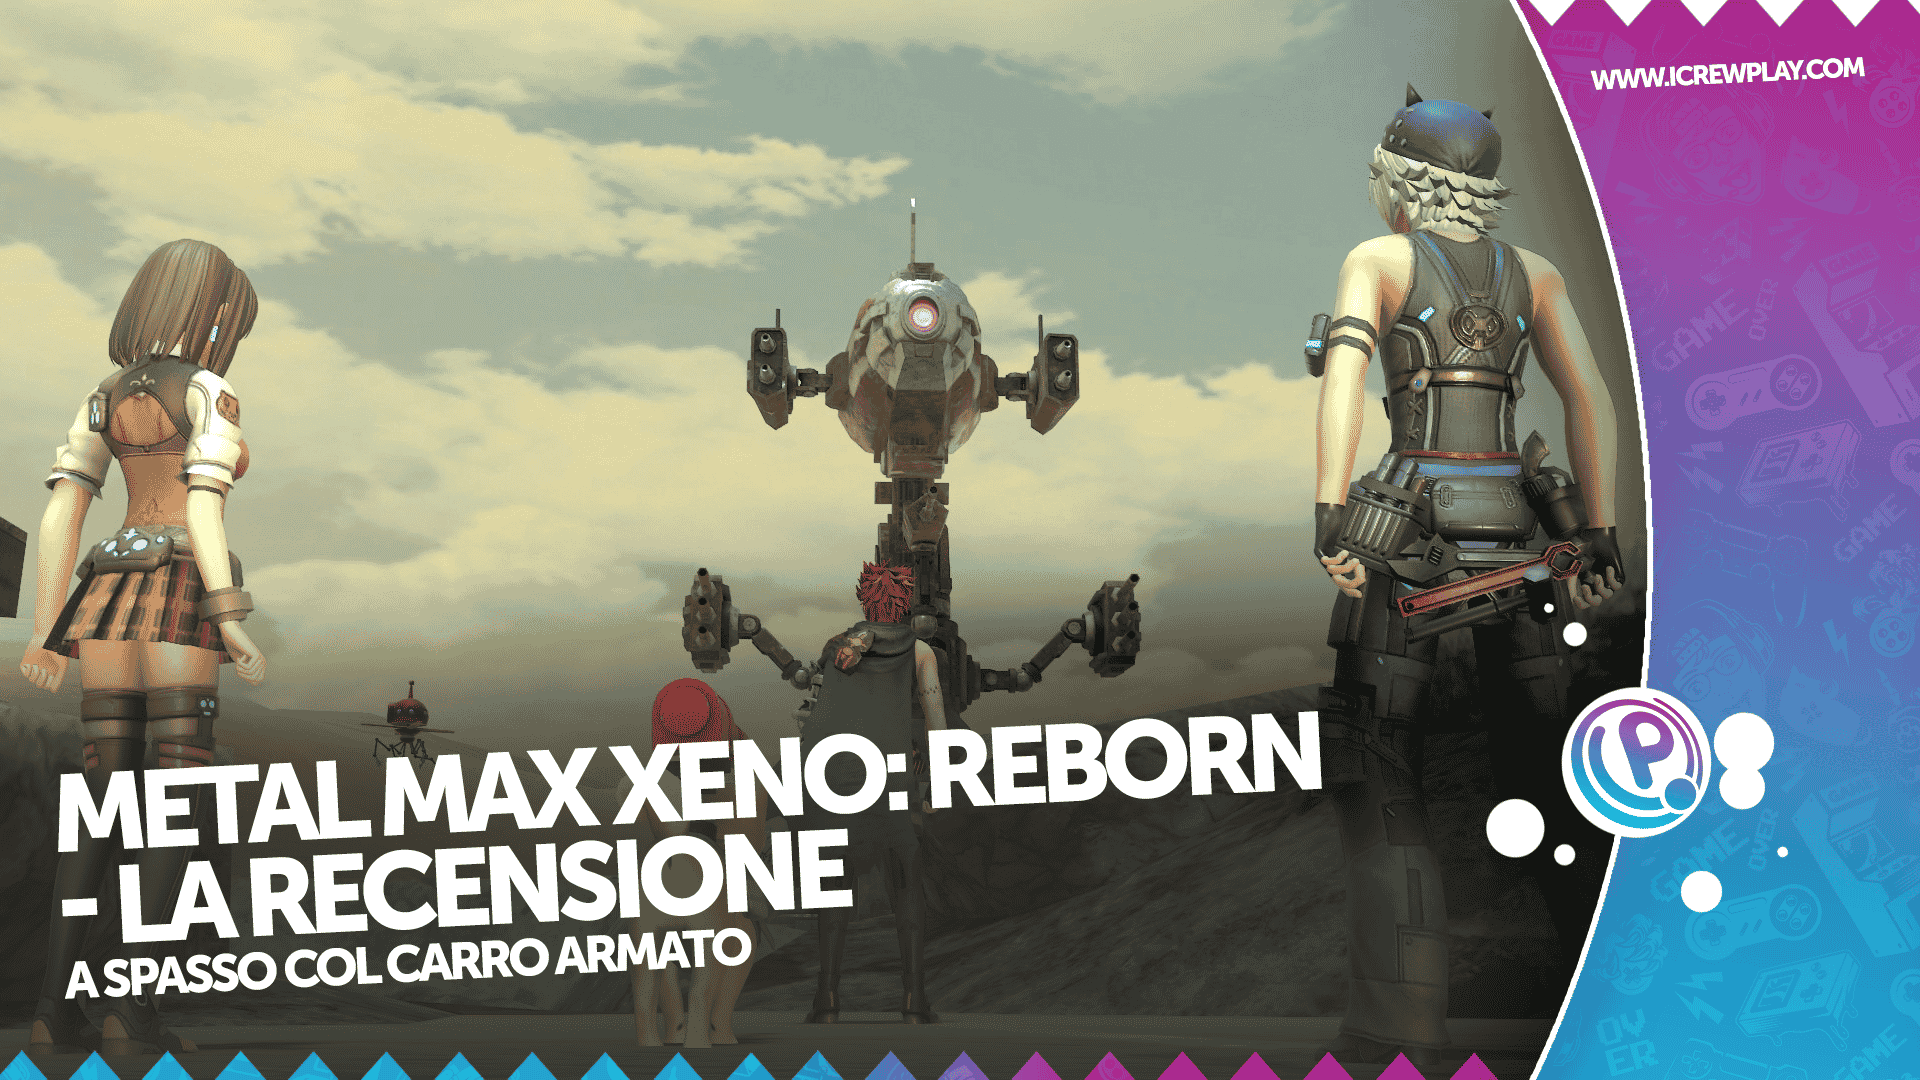 Metal Max Xeno Reborn - la recensione per Nintendo Switch 2